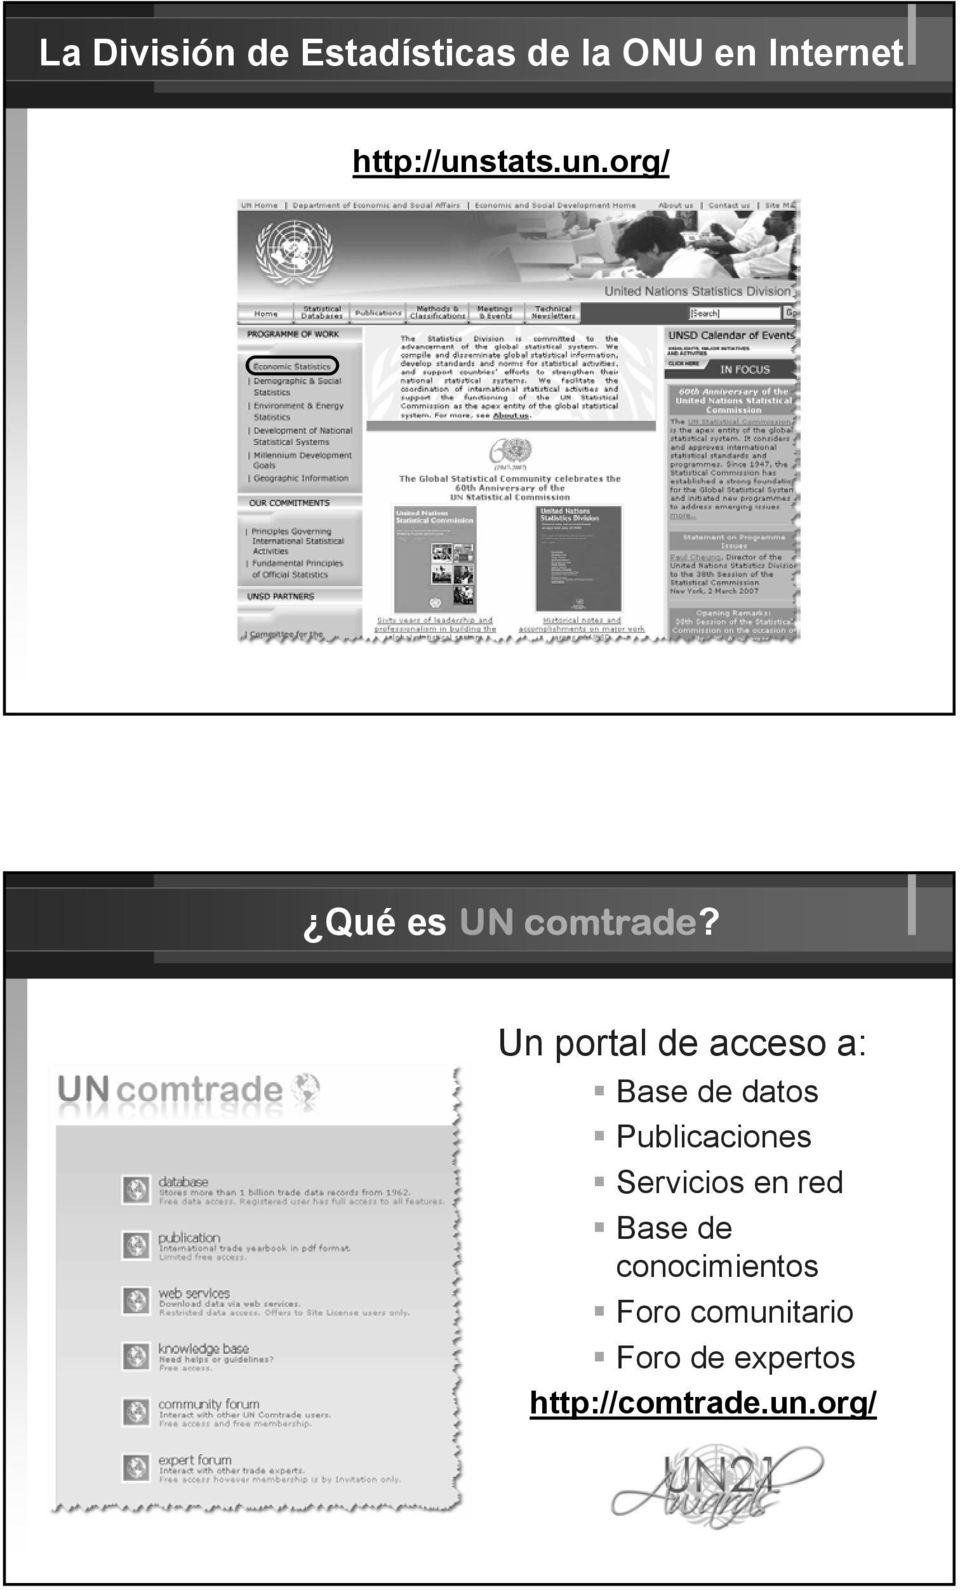 Un portal de acceso a: Base de datos Publicaciones